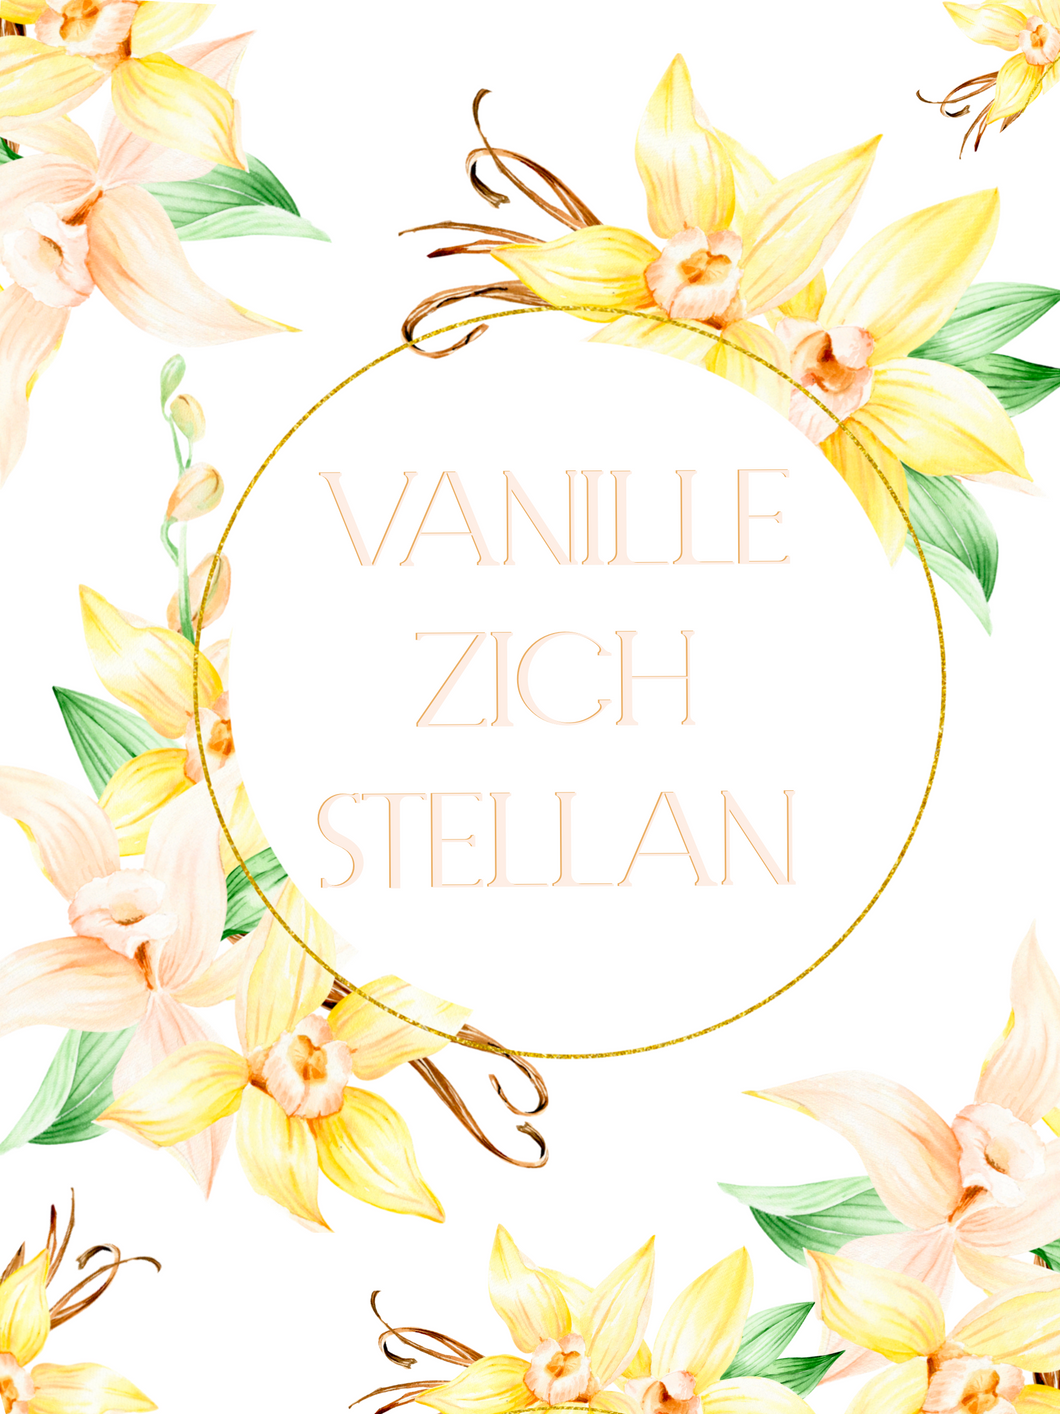 Vanilla Zich Stellan